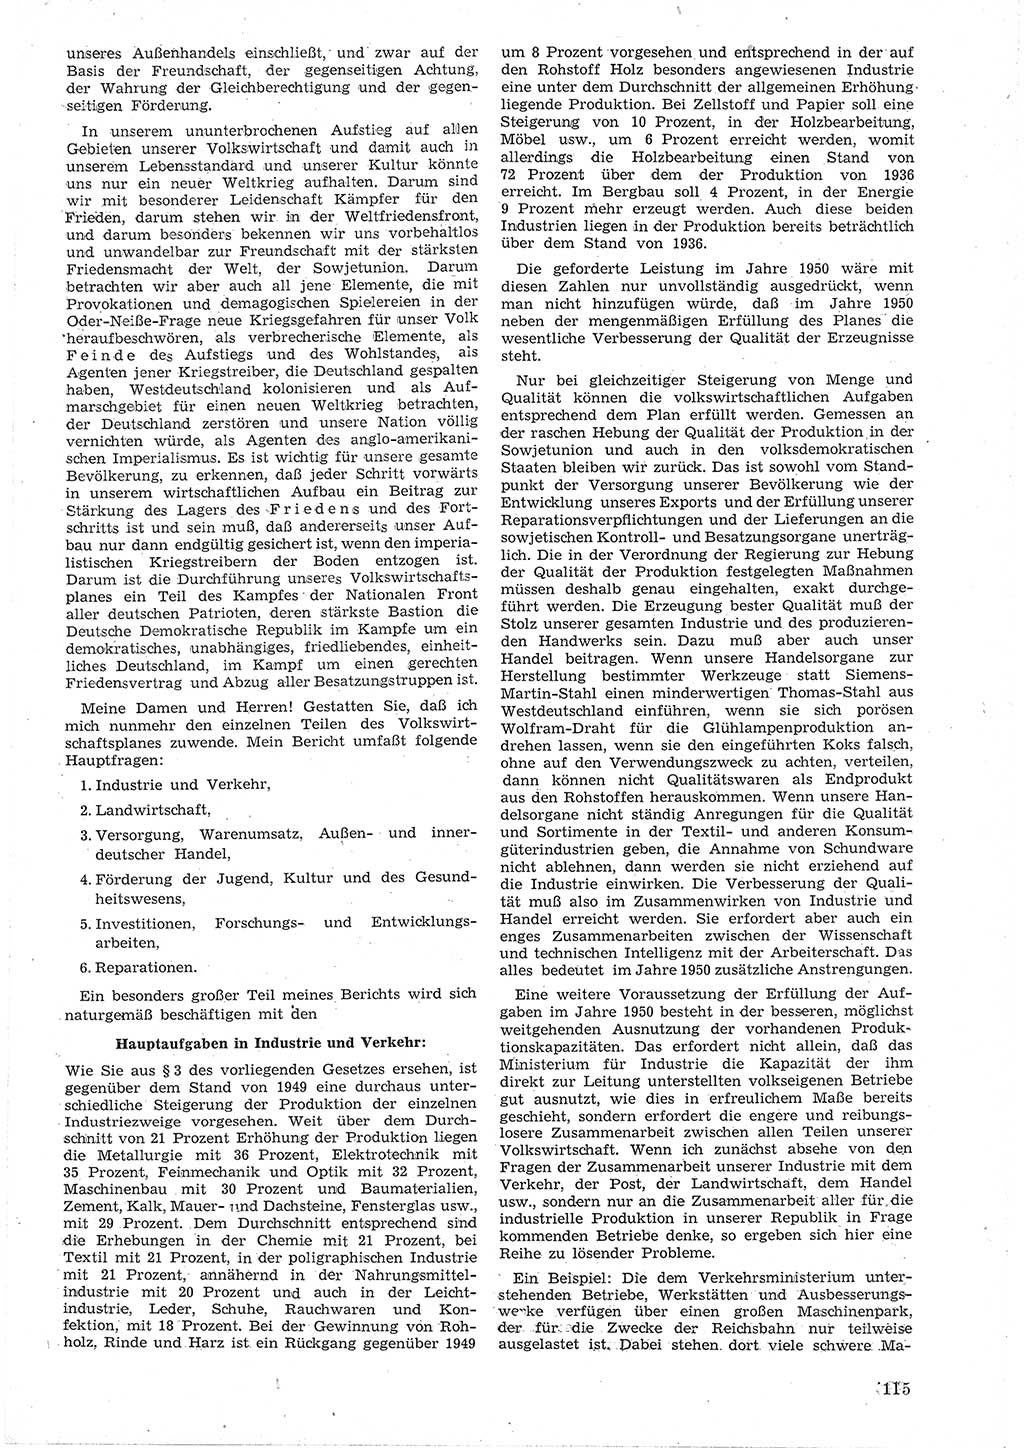 Provisorische Volkskammer (VK) der Deutschen Demokratischen Republik (DDR) 1949-1950, Dokument 127 (Prov. VK DDR 1949-1950, Dok. 127)